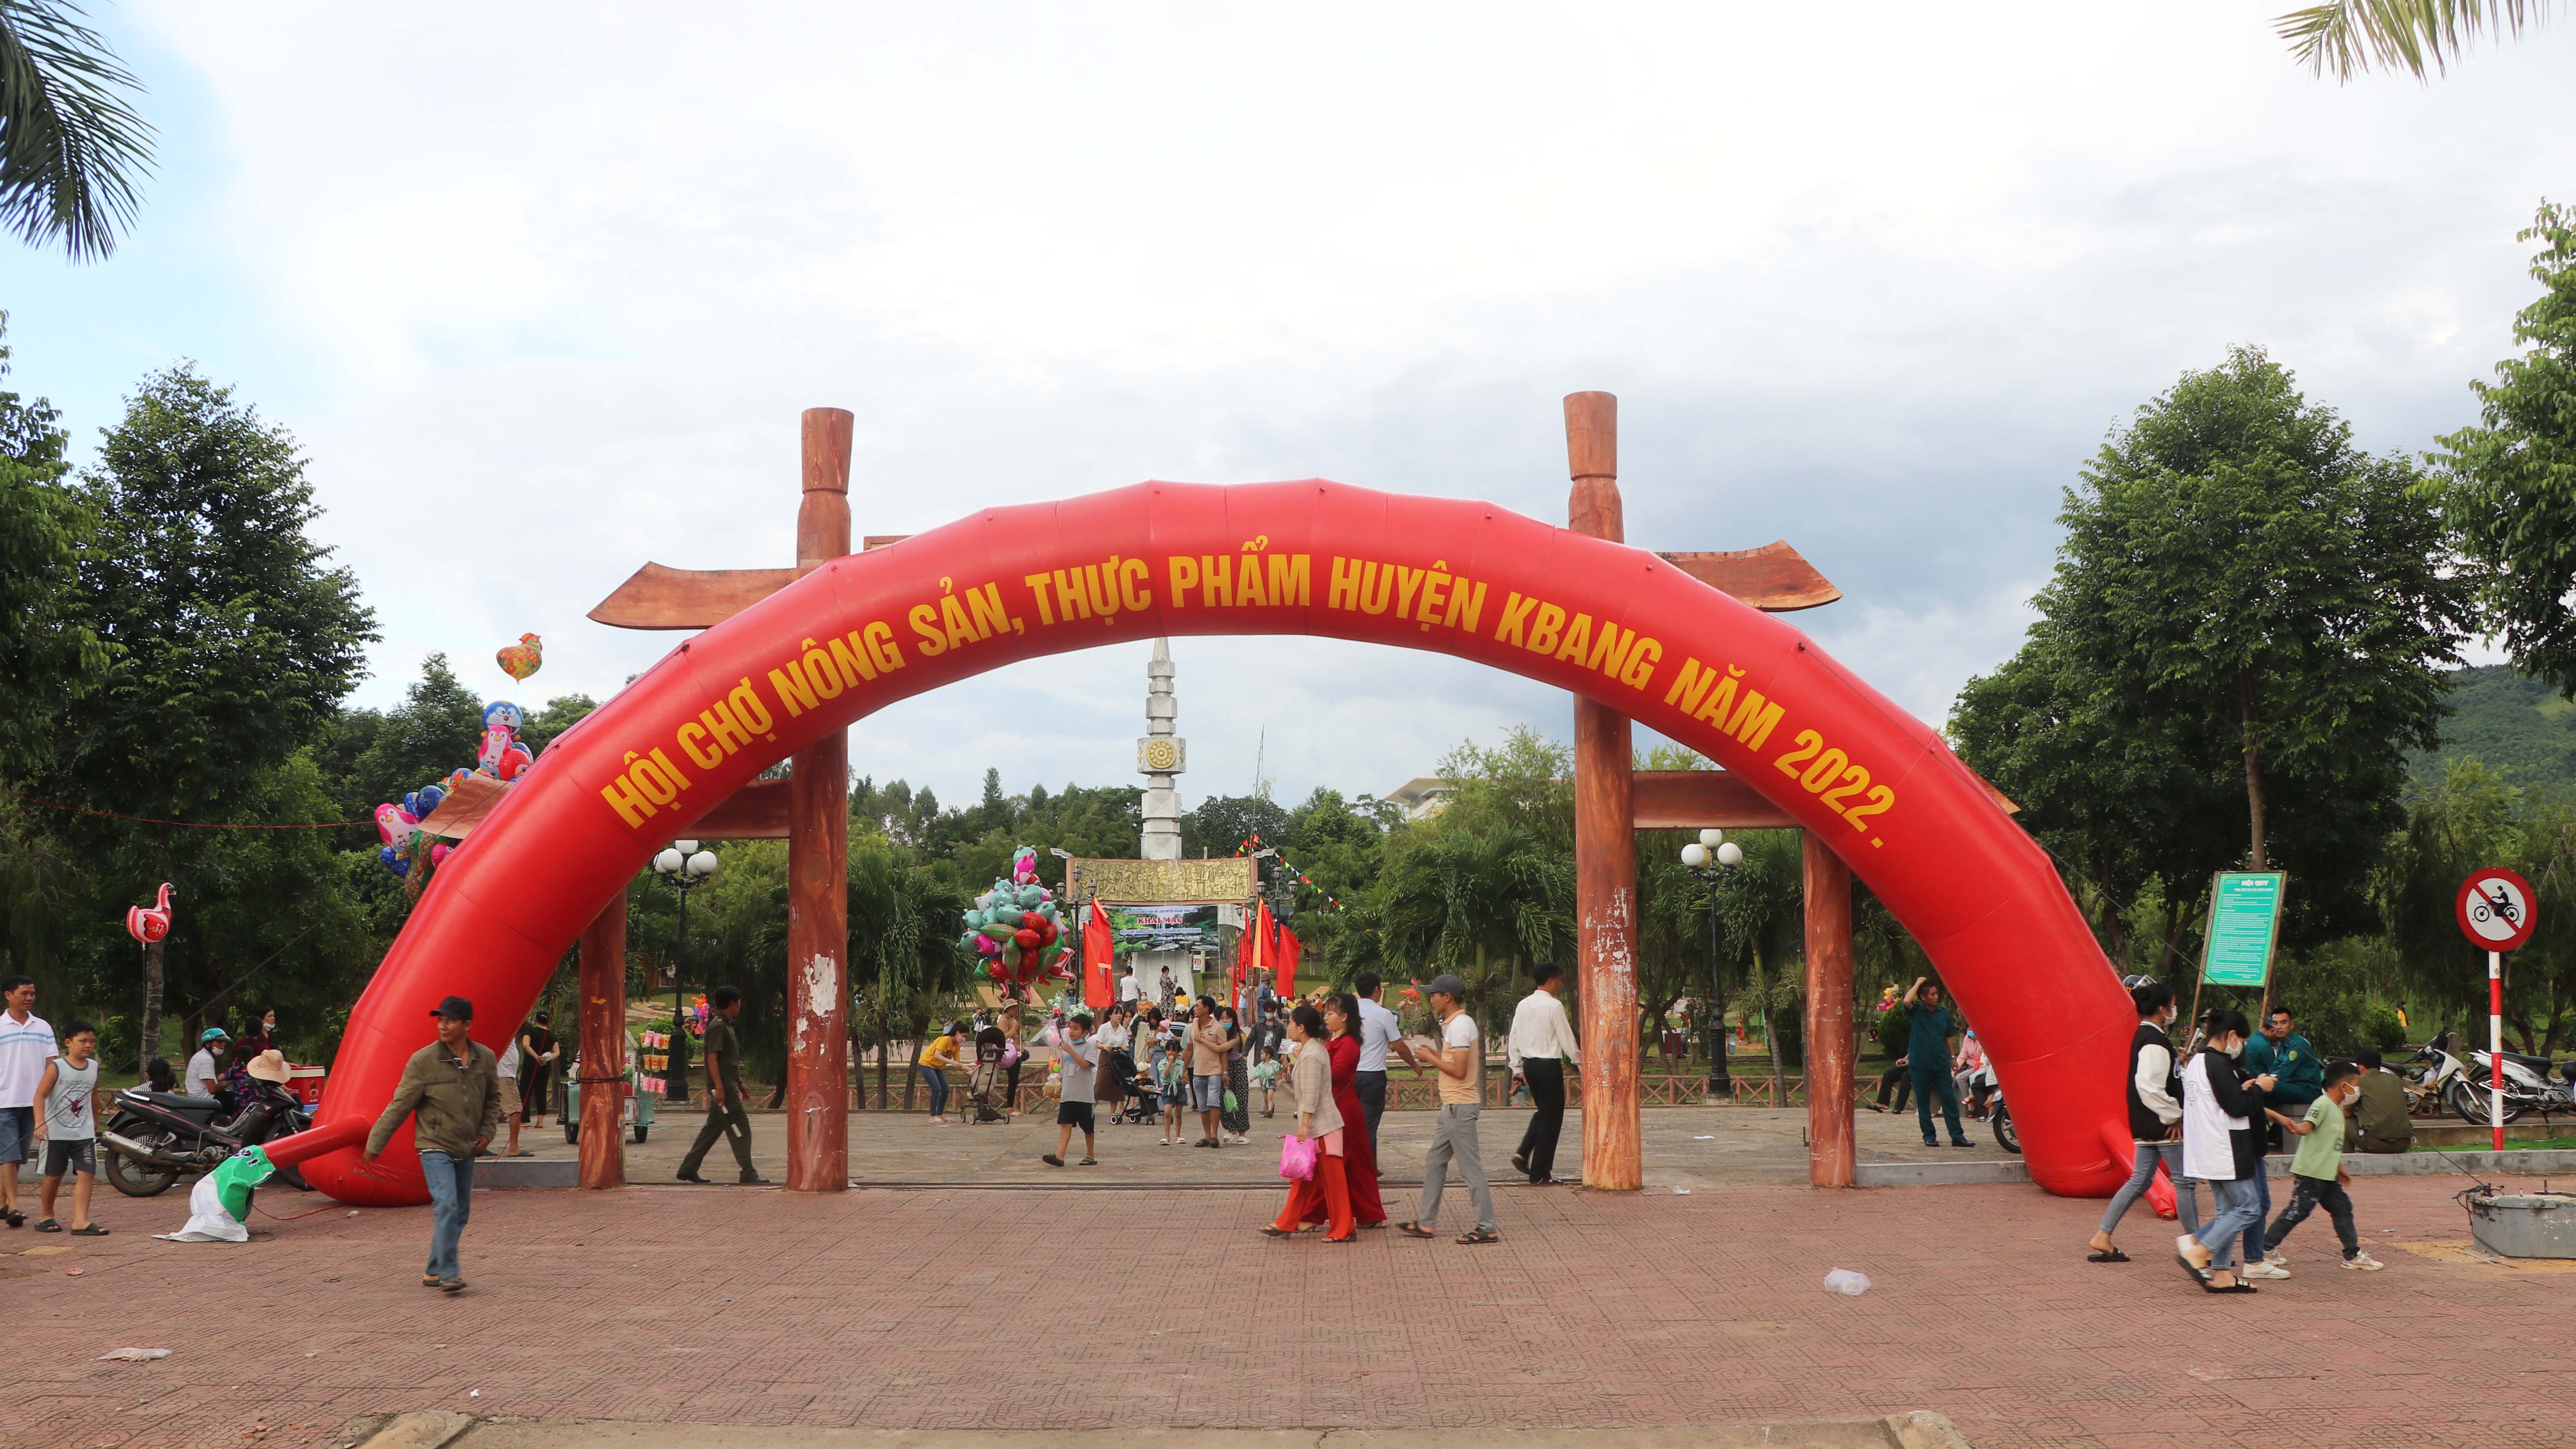 Hội chợ nông sản, thực phẩm năm 2022 diễn ra tại hoa viên (thị trấn Kbang, huyện Kbang). Ảnh: Ngọc Minh